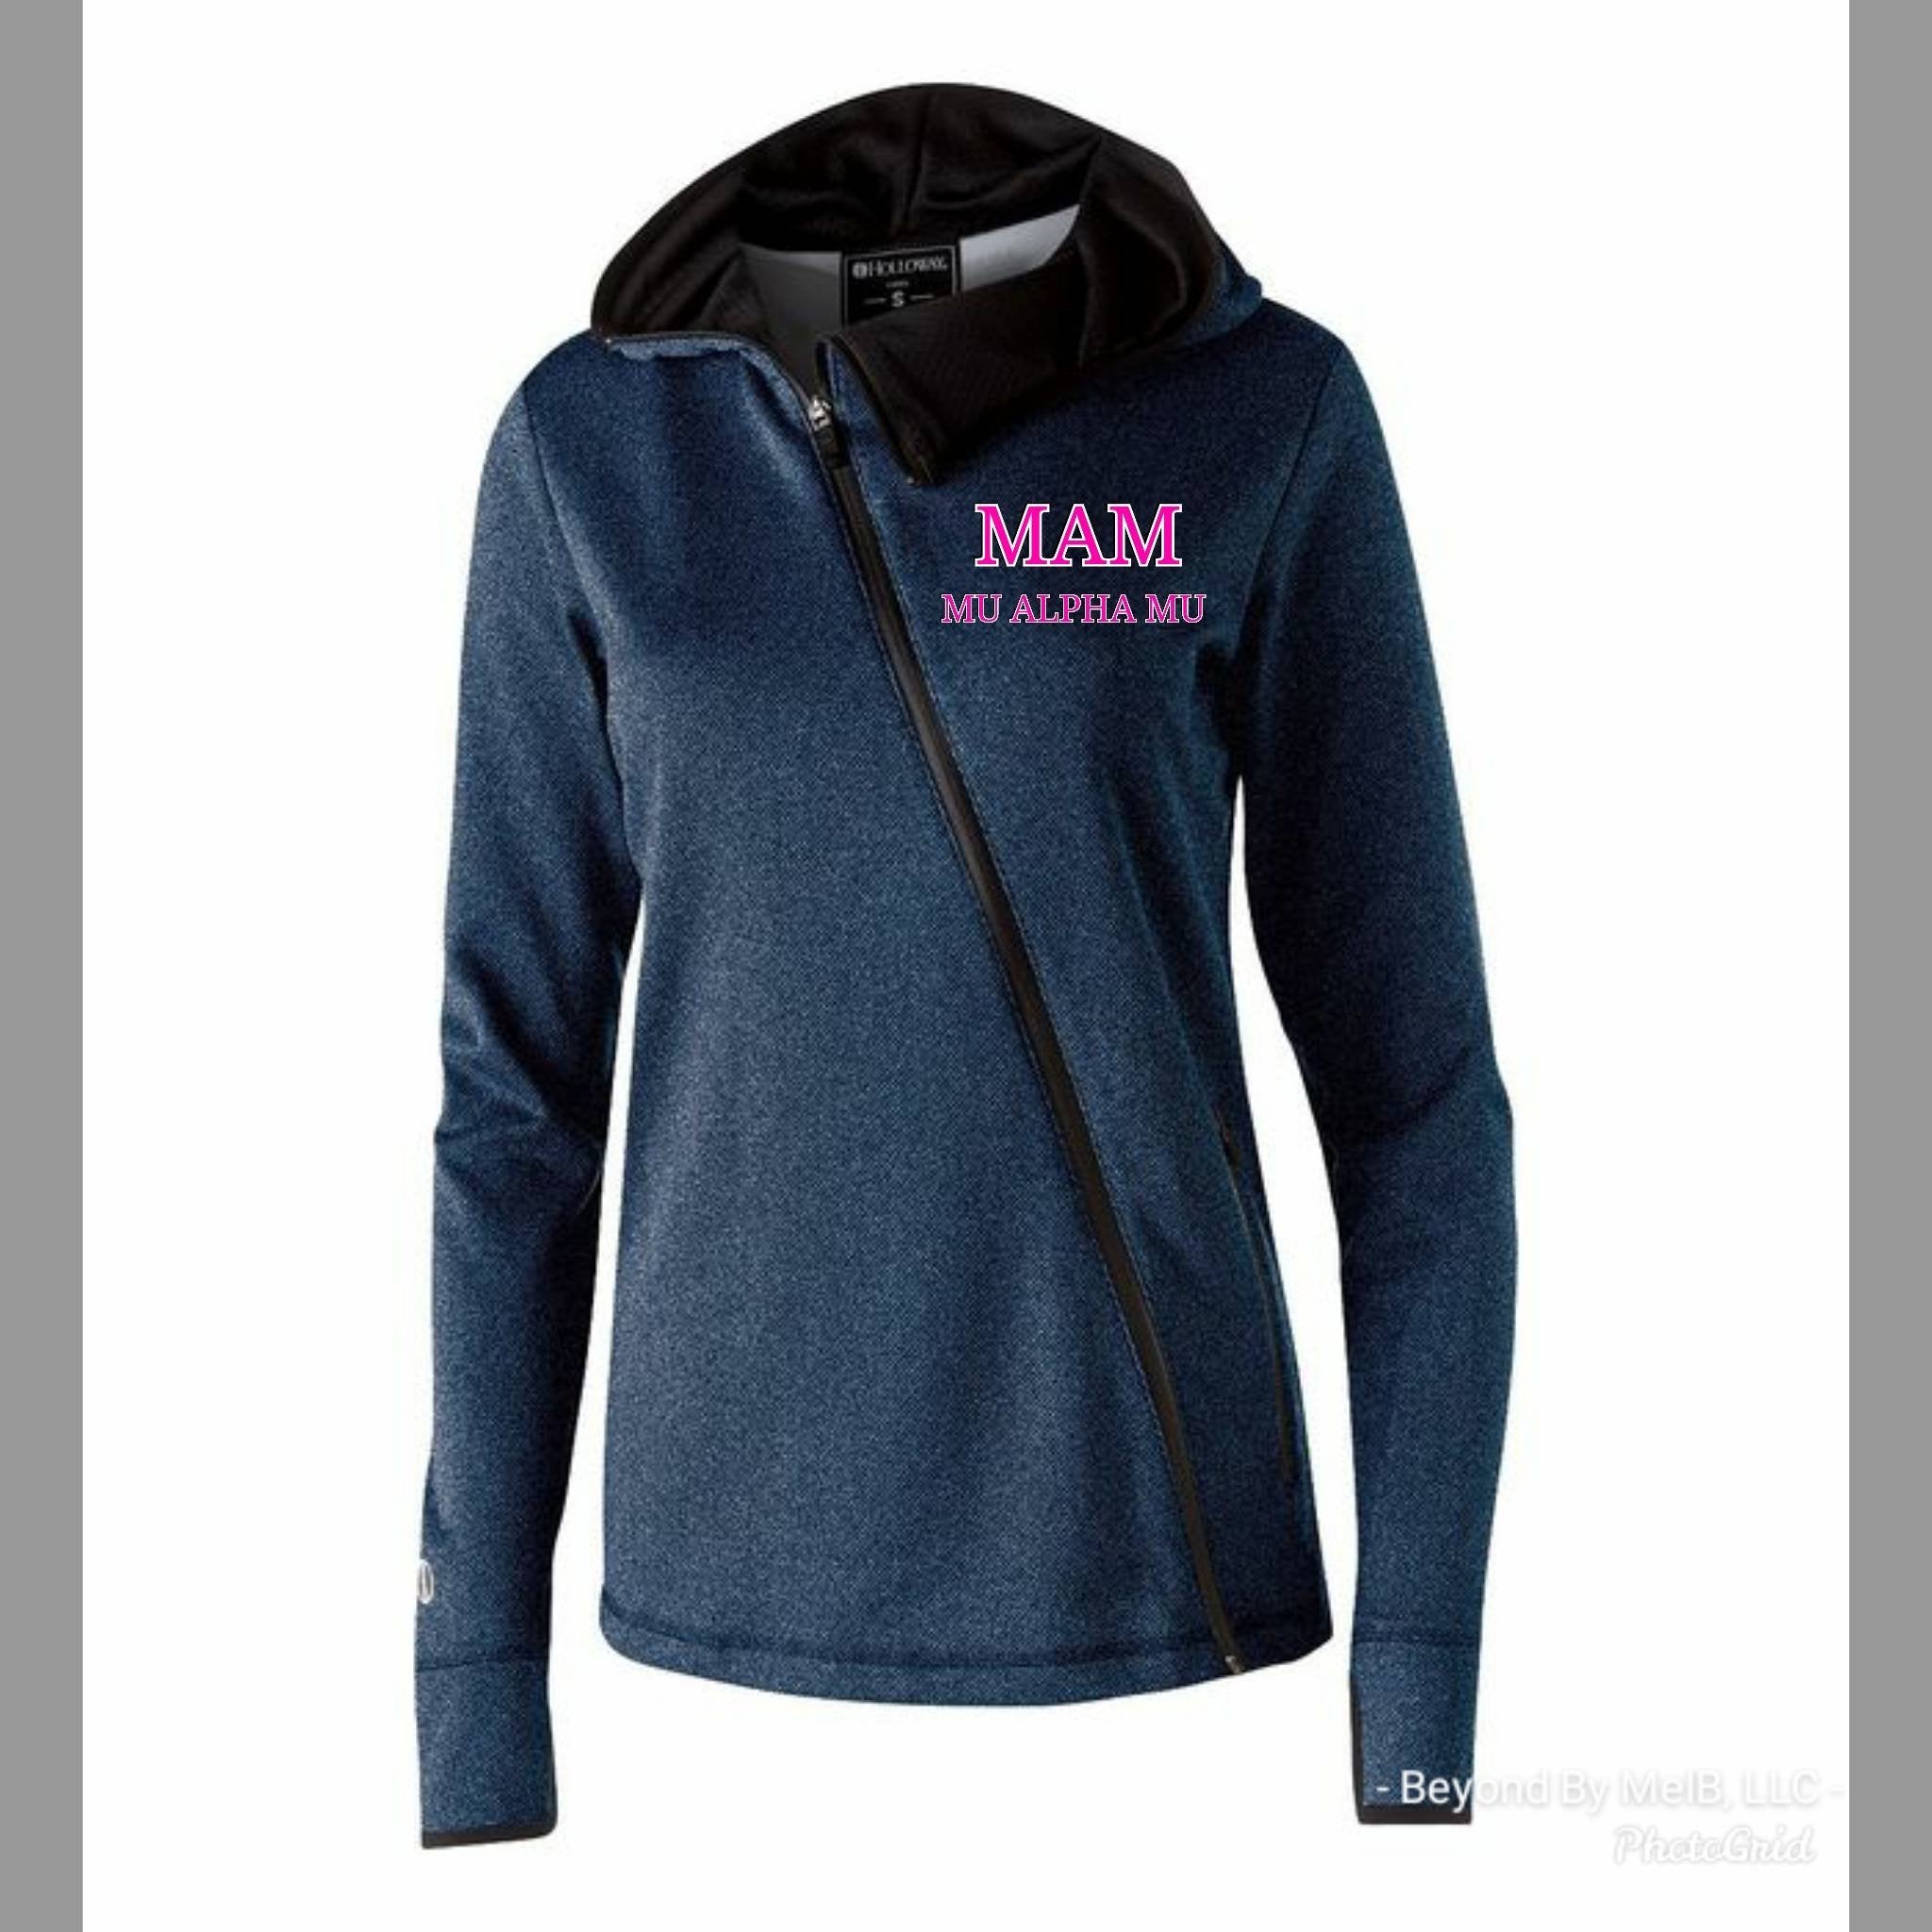 Mu Alpha Mu cross zip hoodie